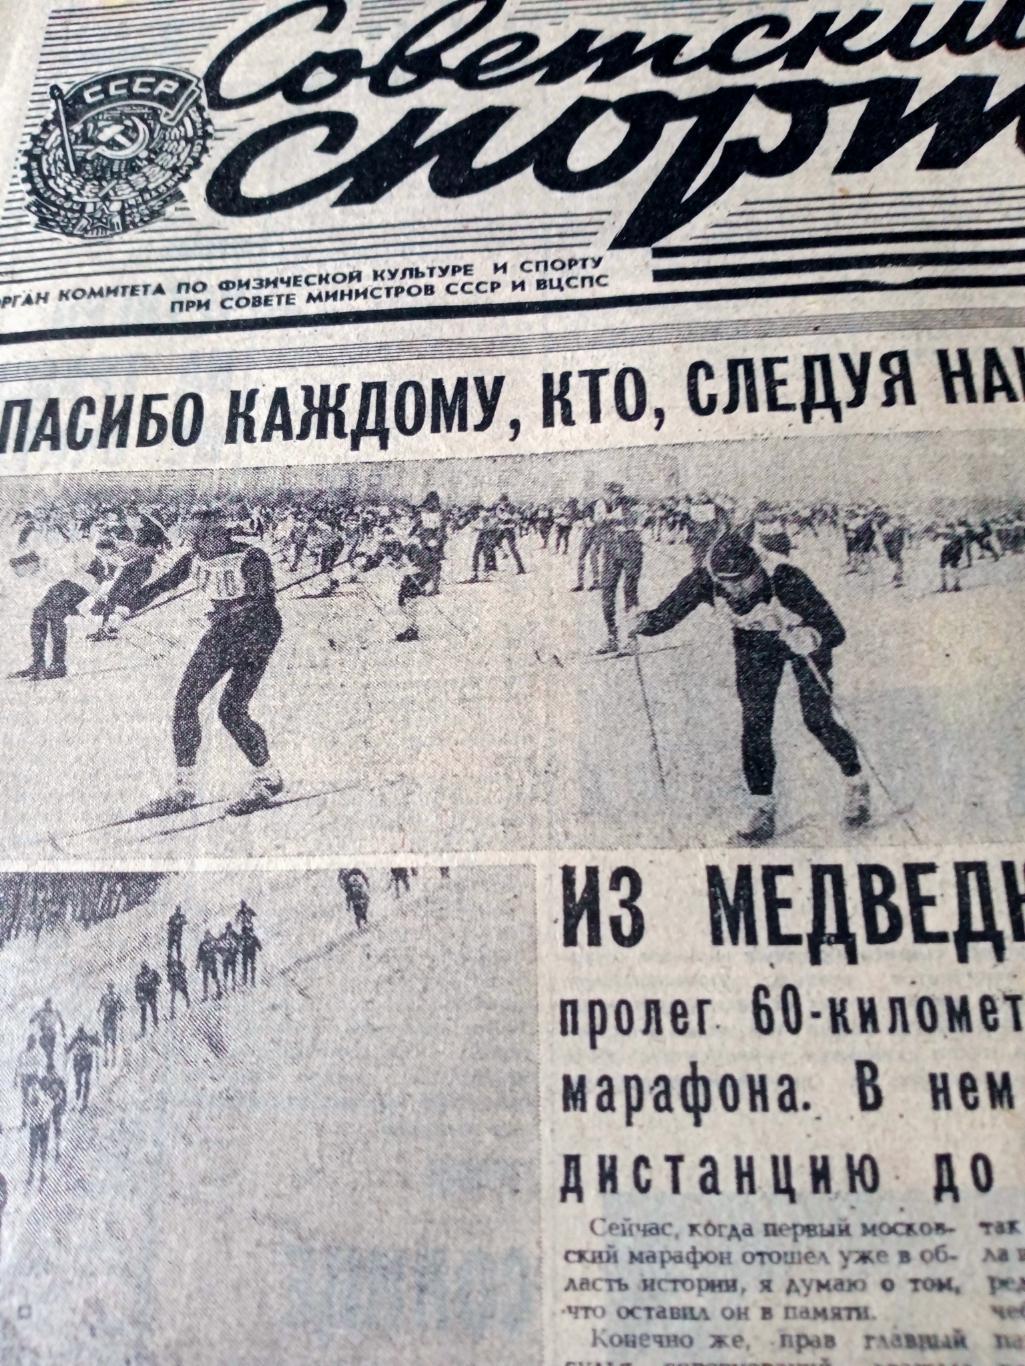 Еврокубки. Советский спорт. 1982 год. 2 марта